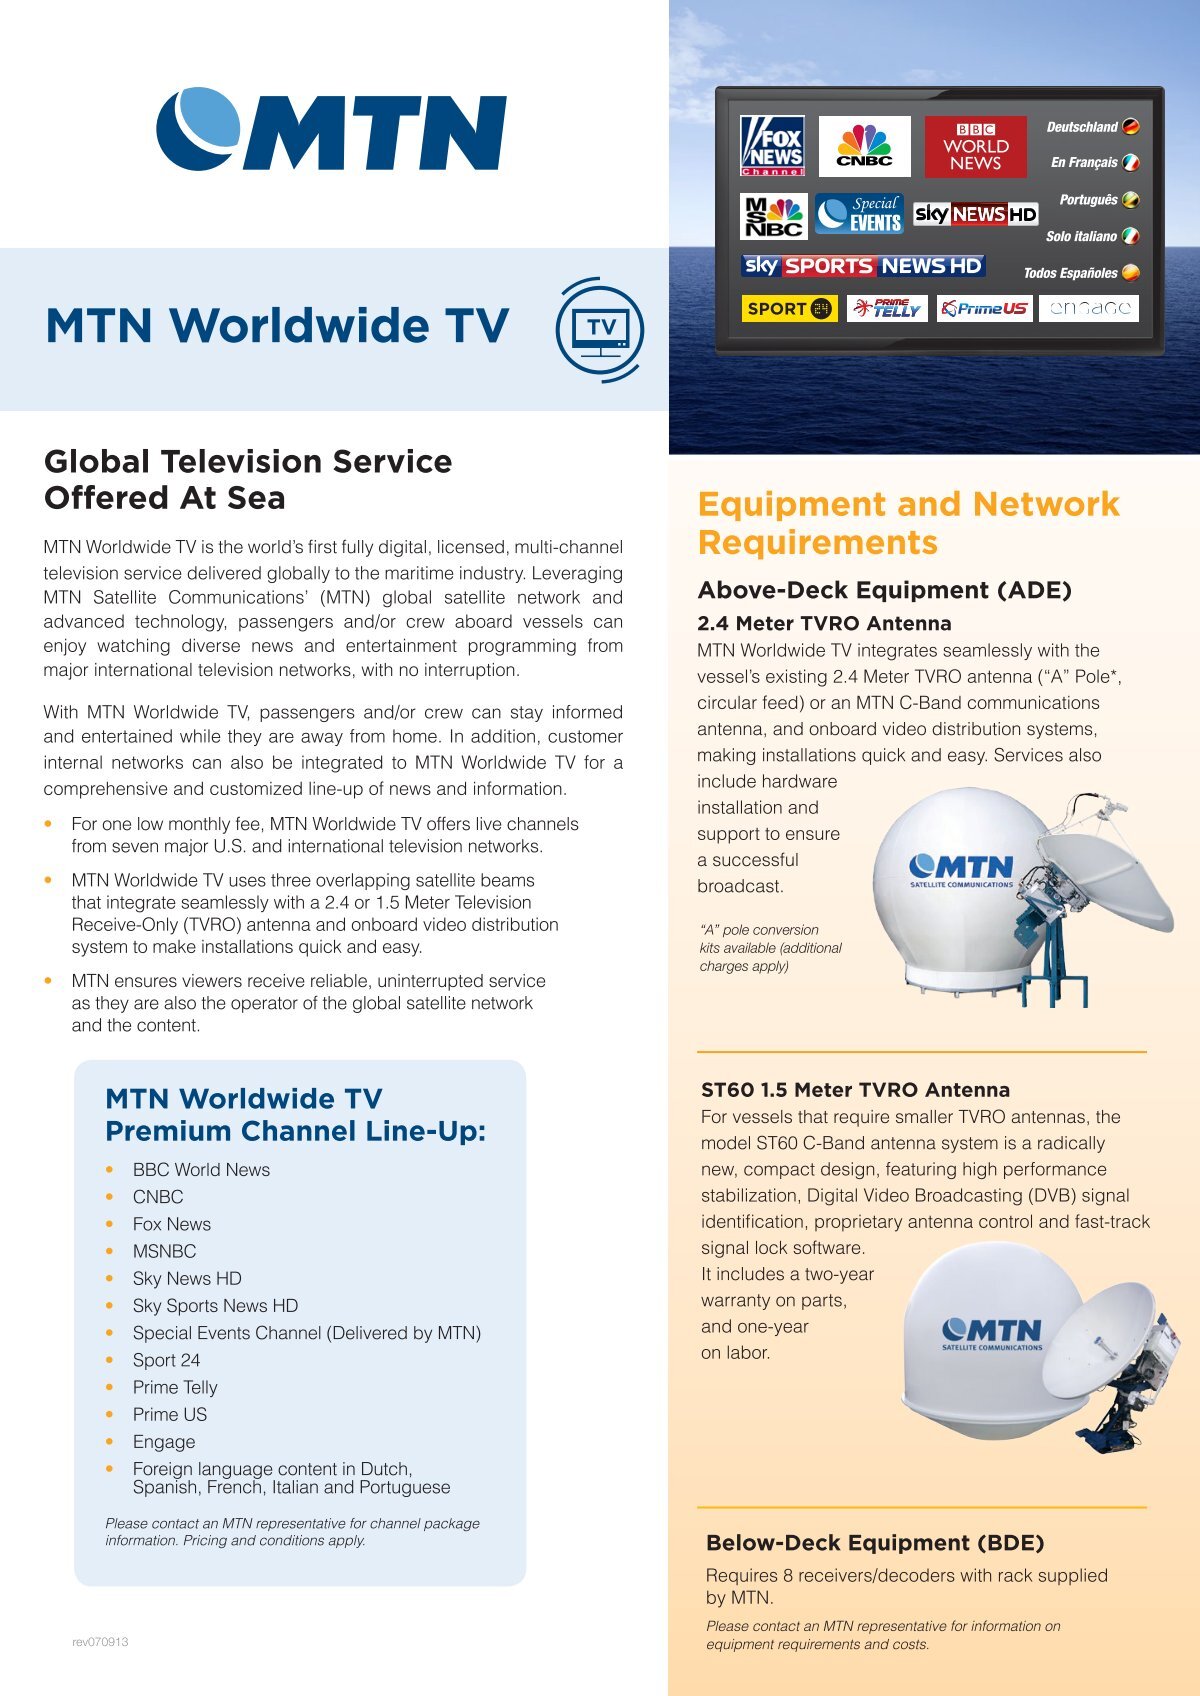 mtn-worldwide-tv-a4-mtn-satellite-communications.jpg